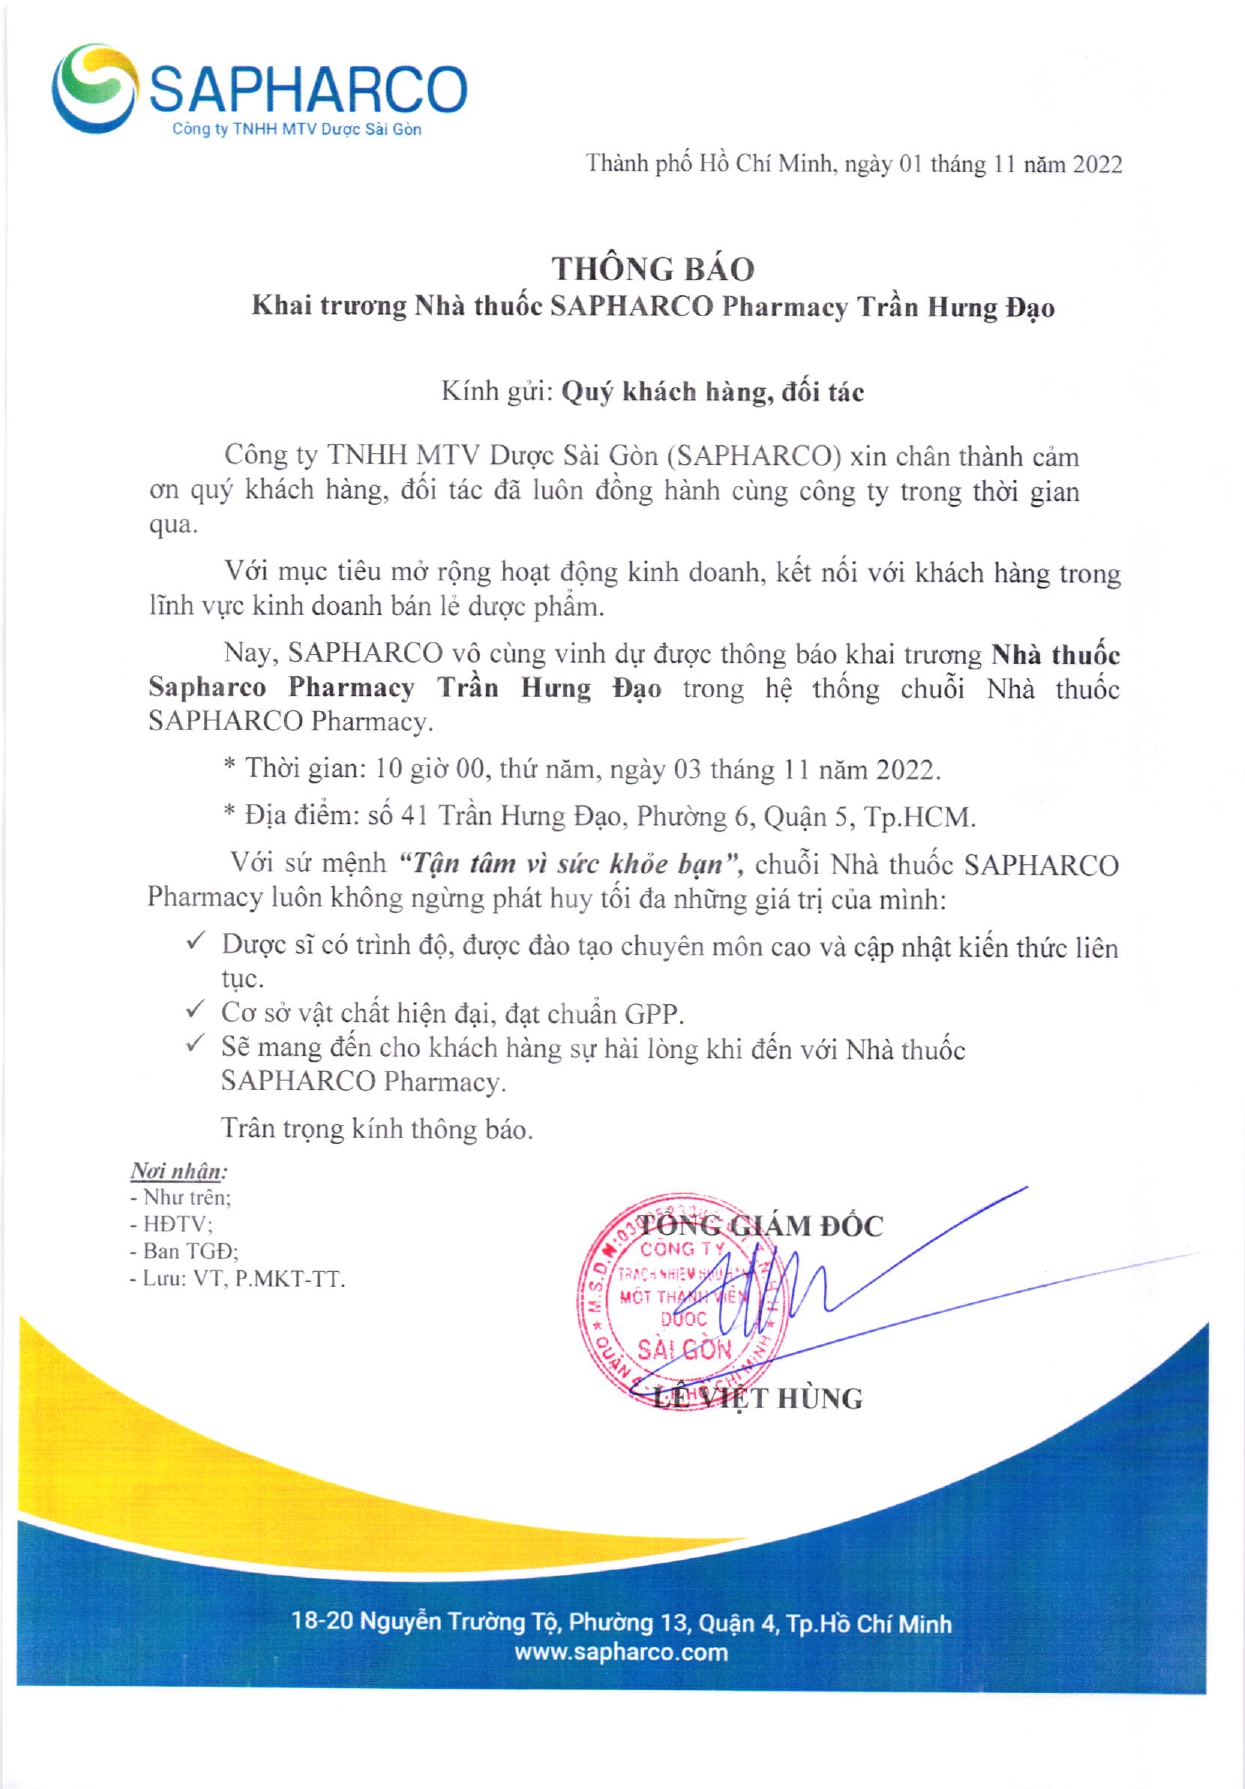 Thông báo khai trương nhà thuốc SAPHARCO pharmacy Trần Hưng Đạo